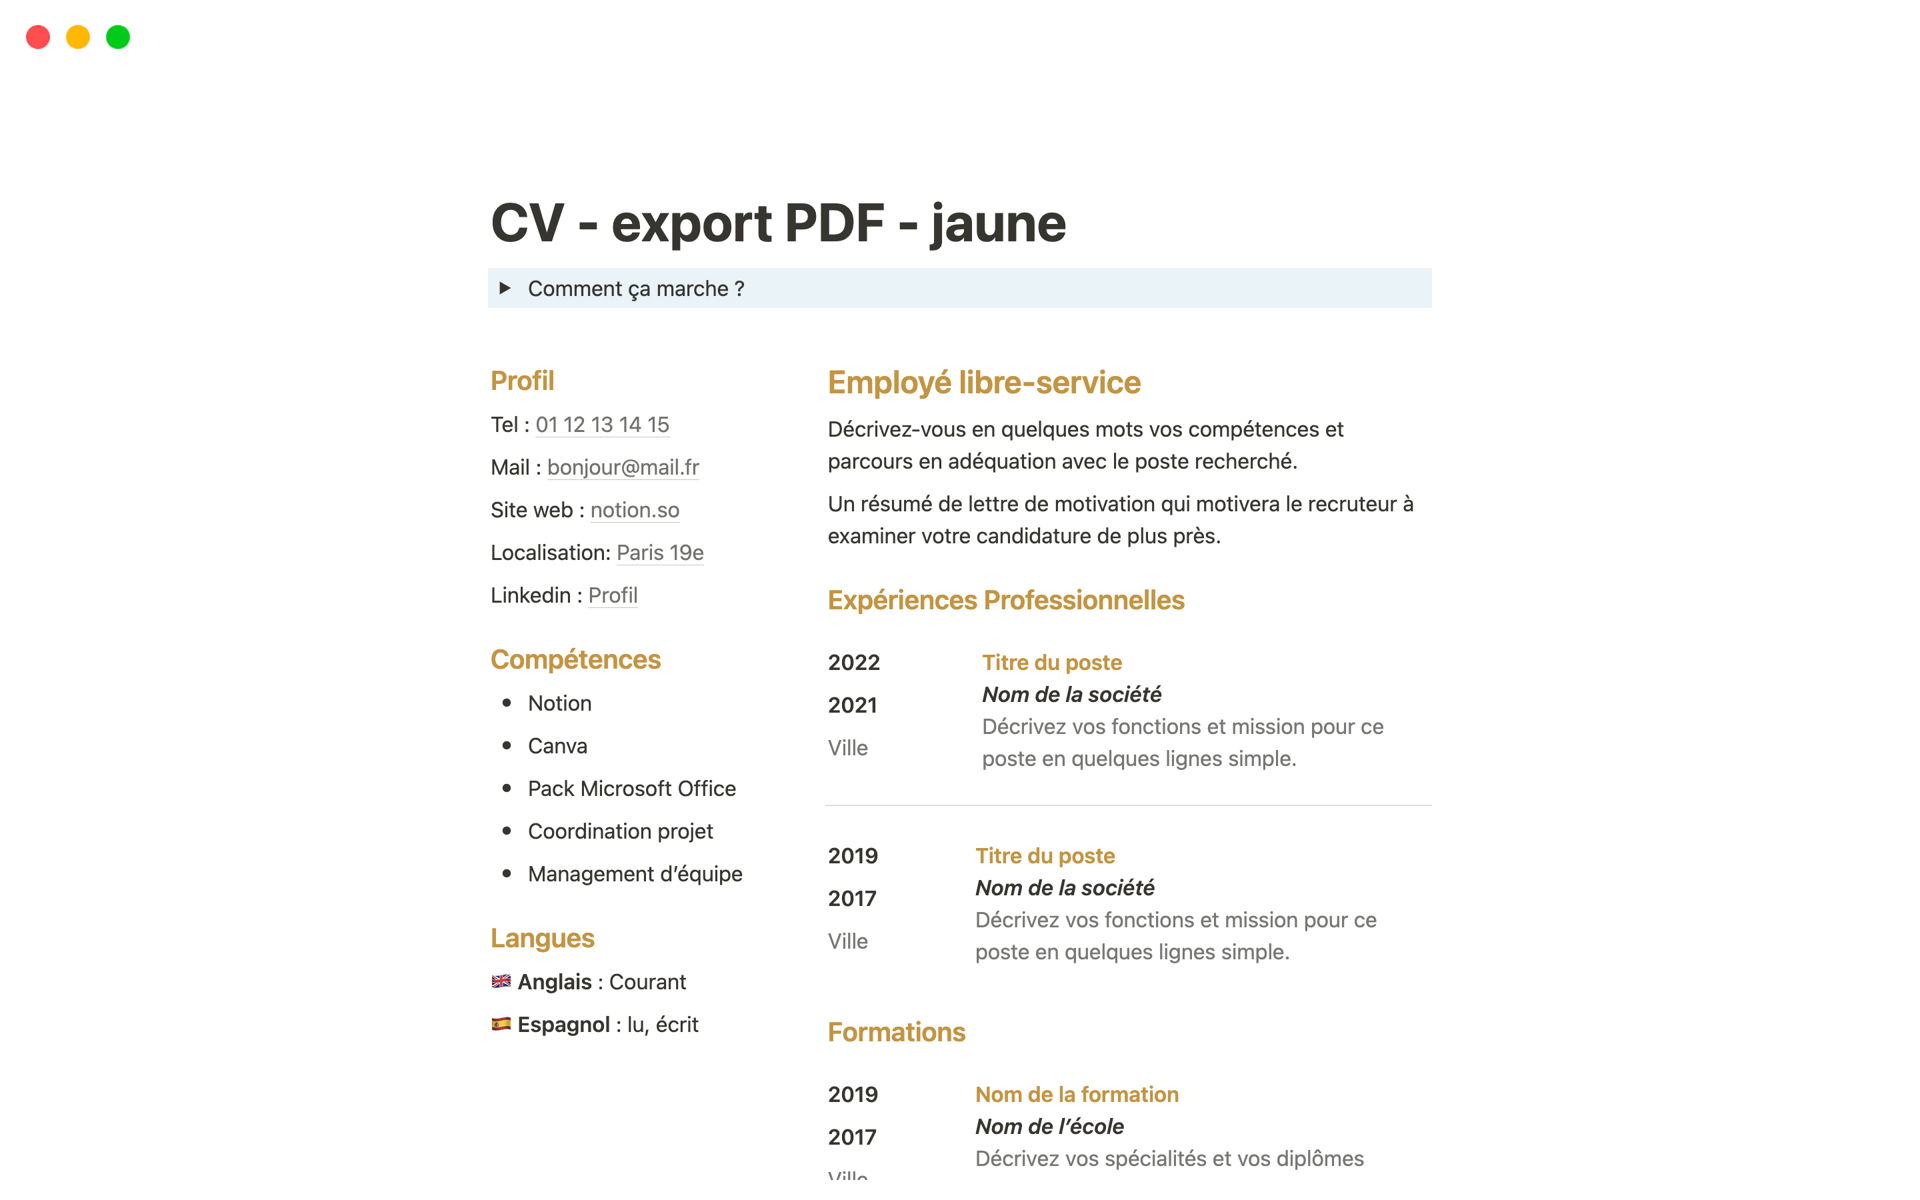 Vista previa de una plantilla para CV simple pour export PDF - jaune